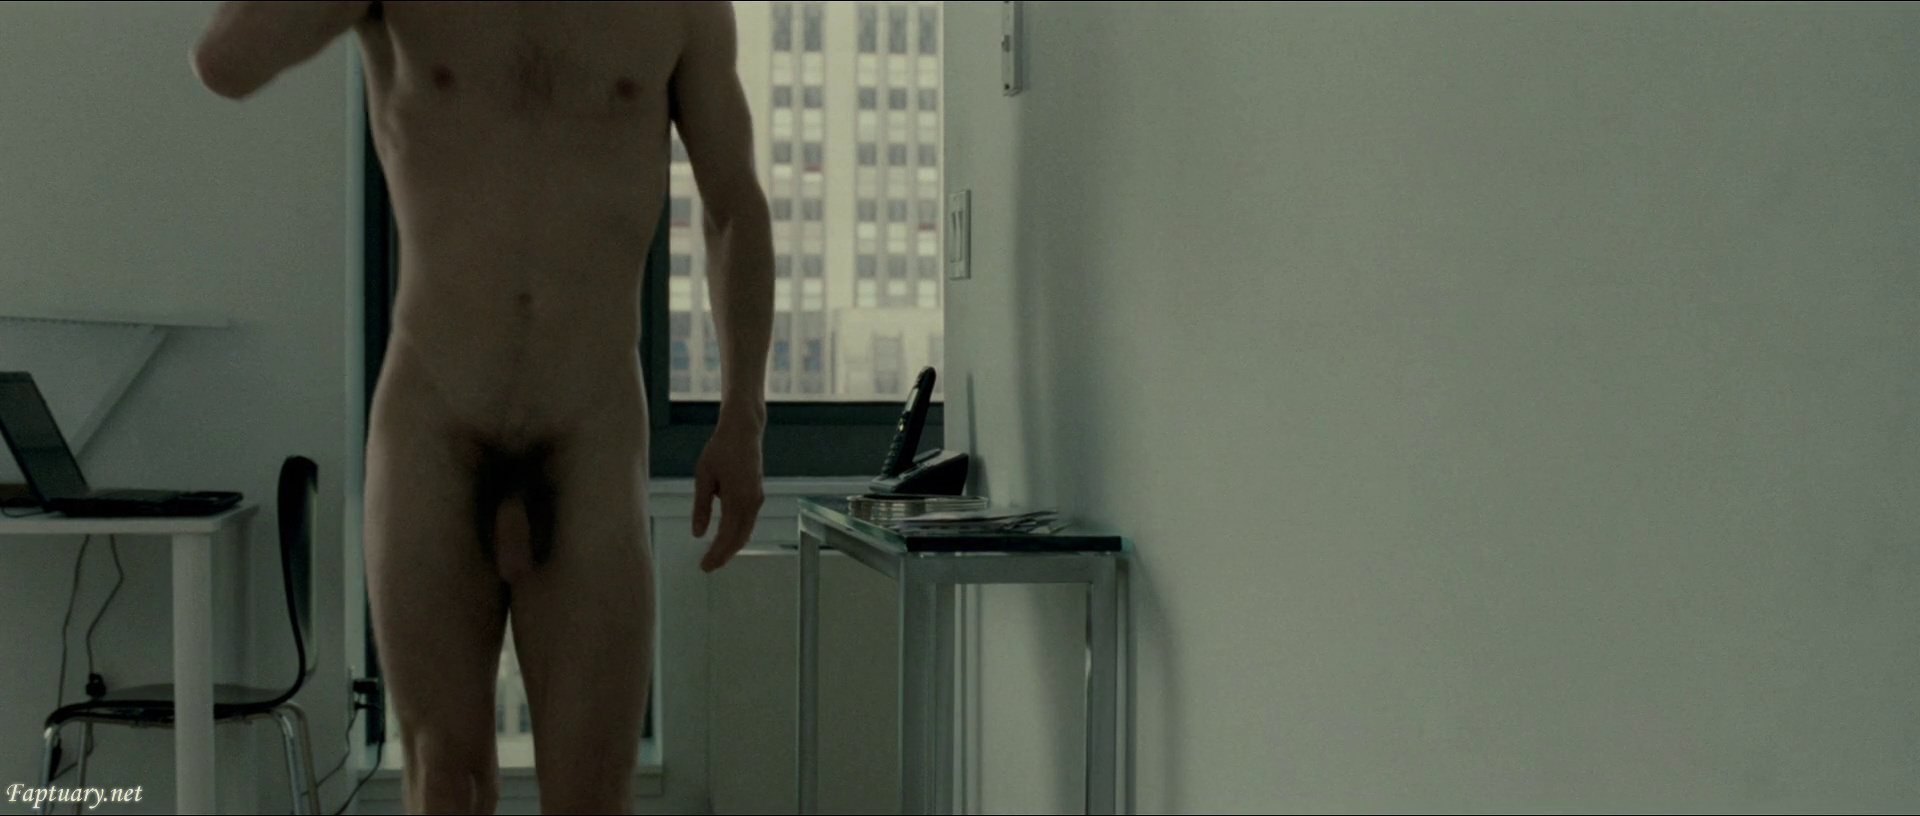 Willem dafoe nudes